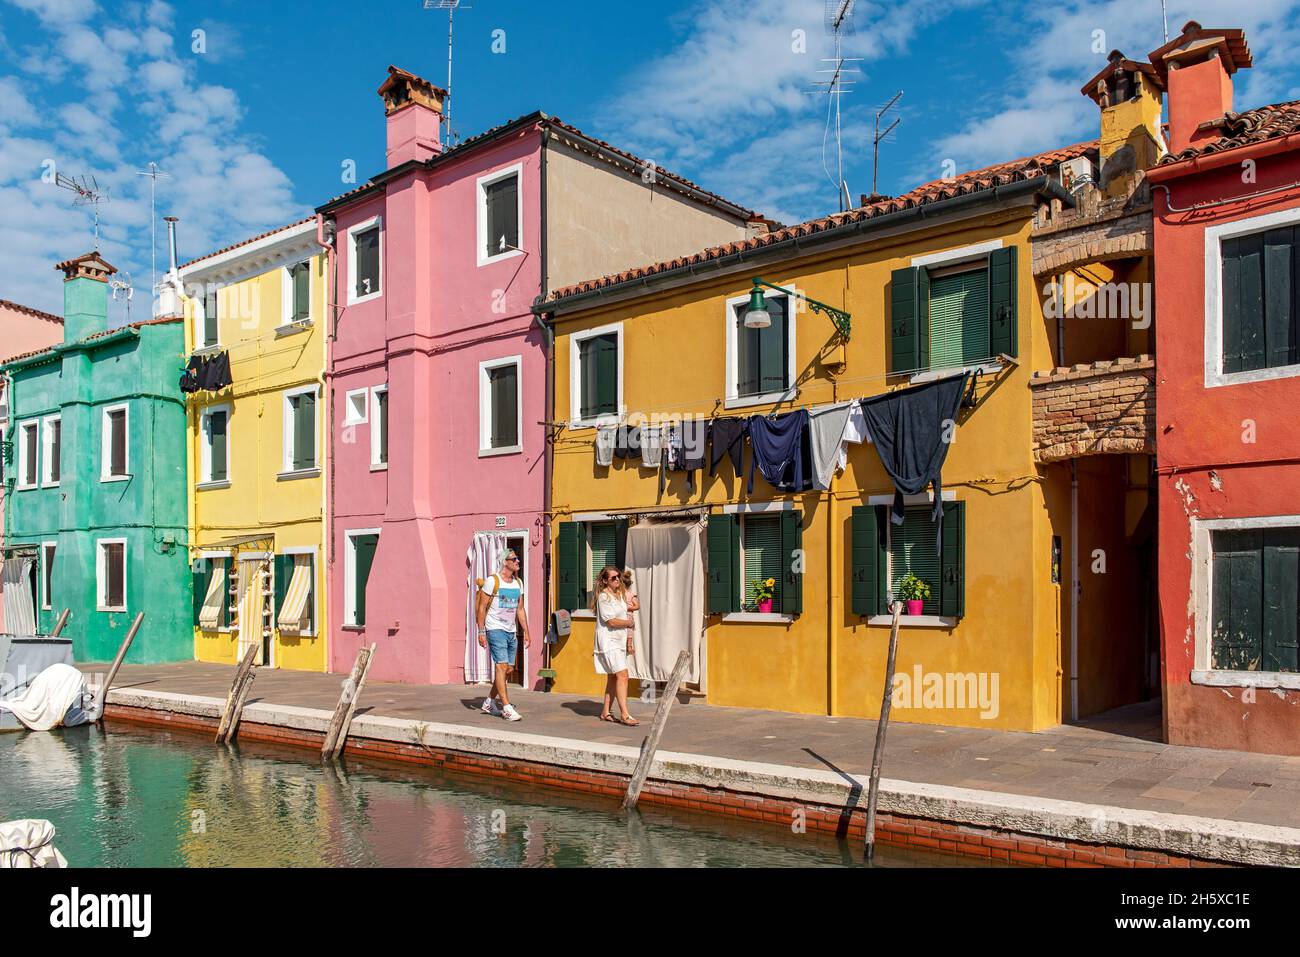 Case dipinte con colori vivaci, Burano, Venezia, Italia Foto Stock